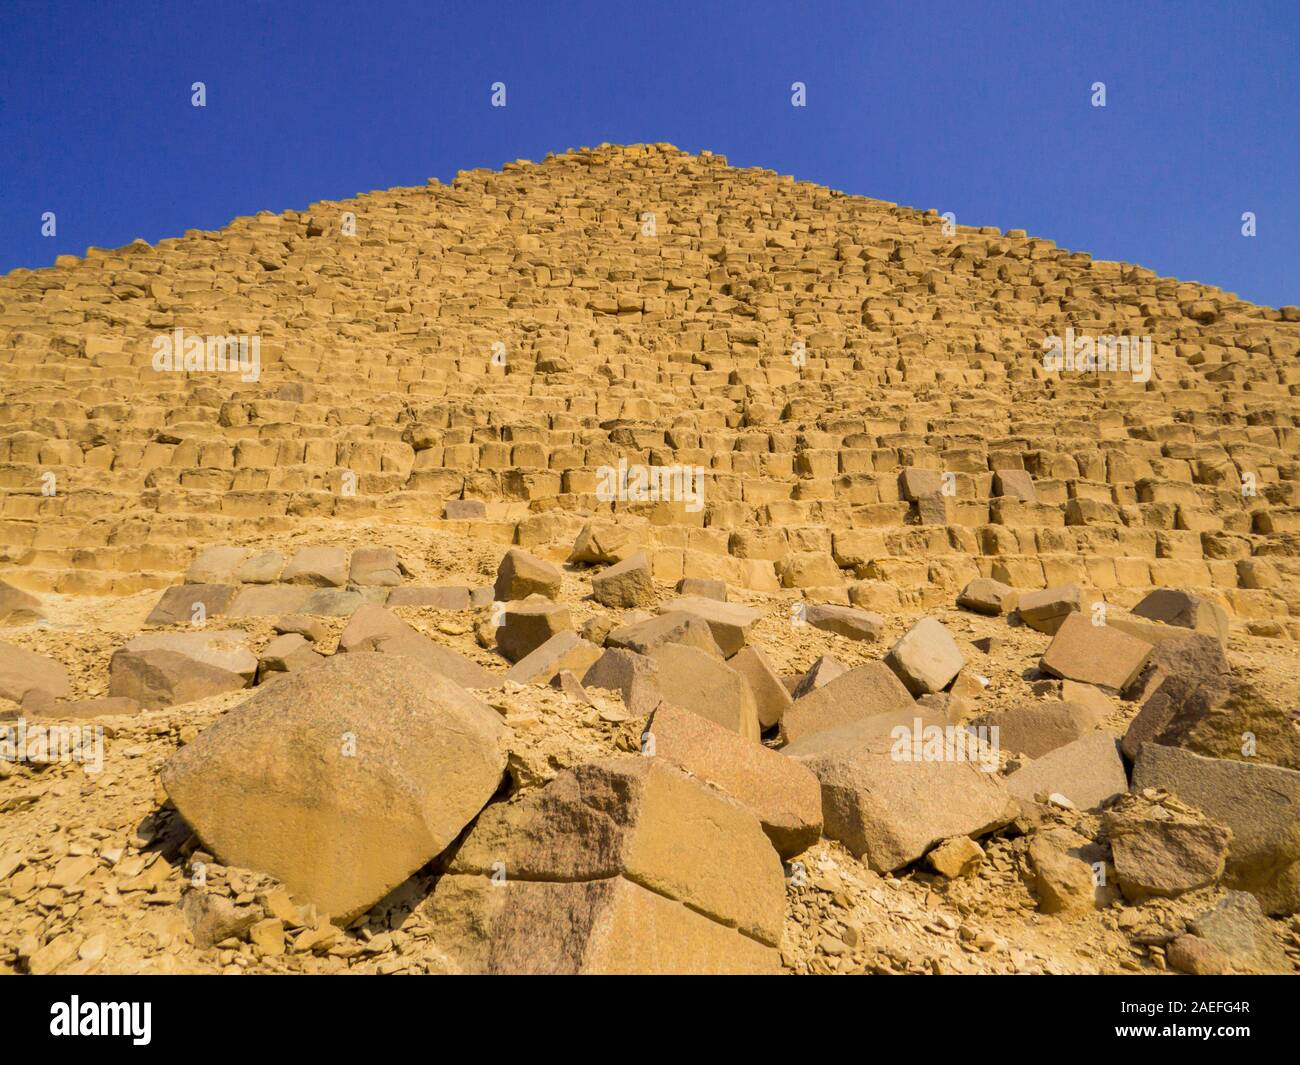 Pyramid of Menkaure, Giza Necropolis, Cairo, Egypt Stock Photo